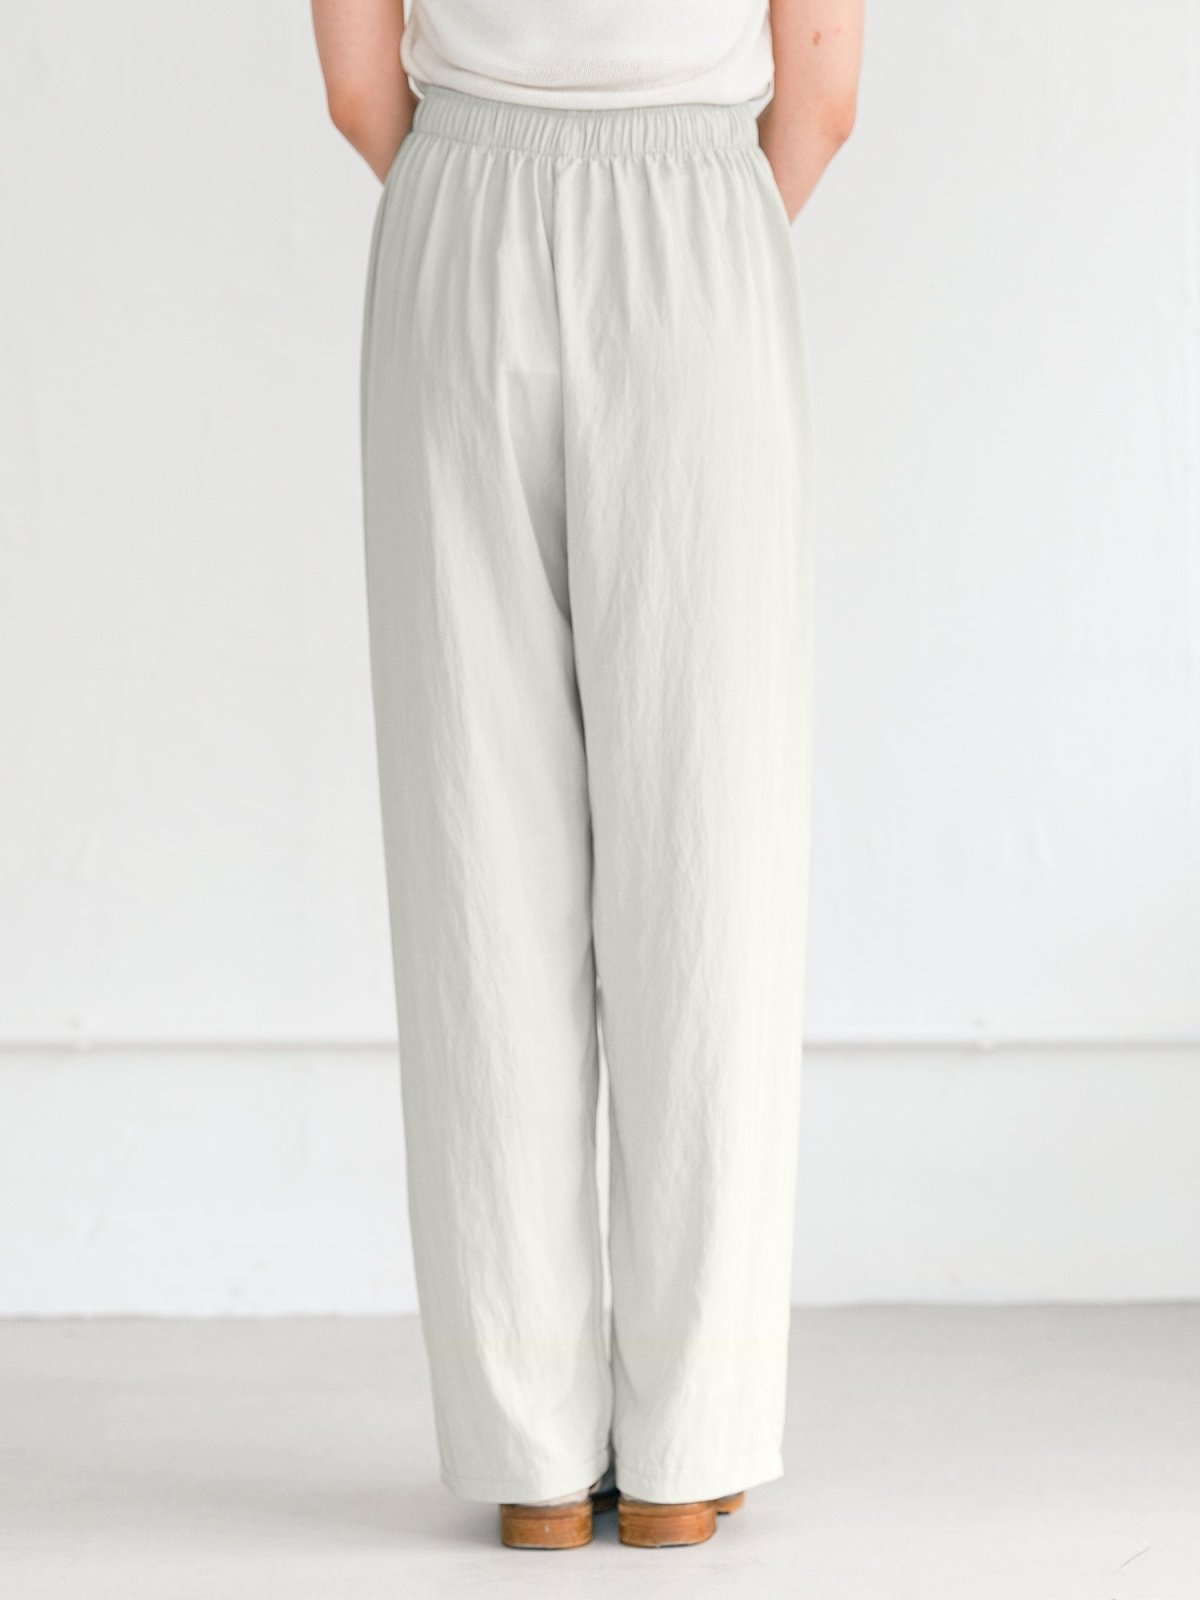 Rachel Tie Waist Wide Leg Trousers - DAG-G-220176WhiteF - Greenish White - F - D'ZAGE Designs